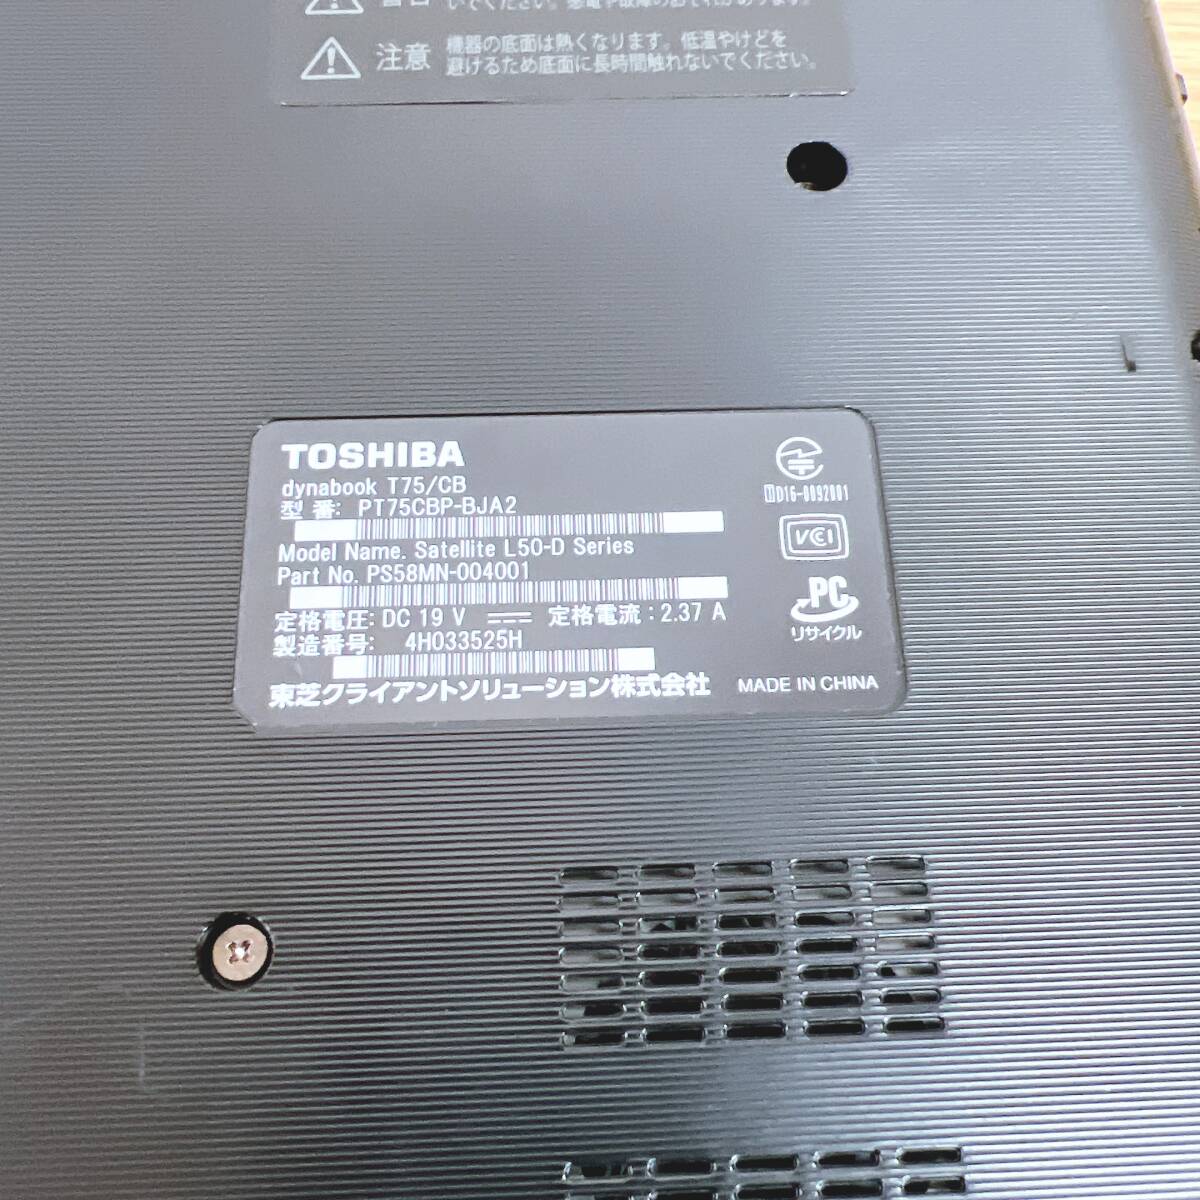 Kt[ Junk ] Toshiba dynabook T75/CB black i7-7500U 2.70GHz OS less laptop electrification OK part removing 1 jpy start 